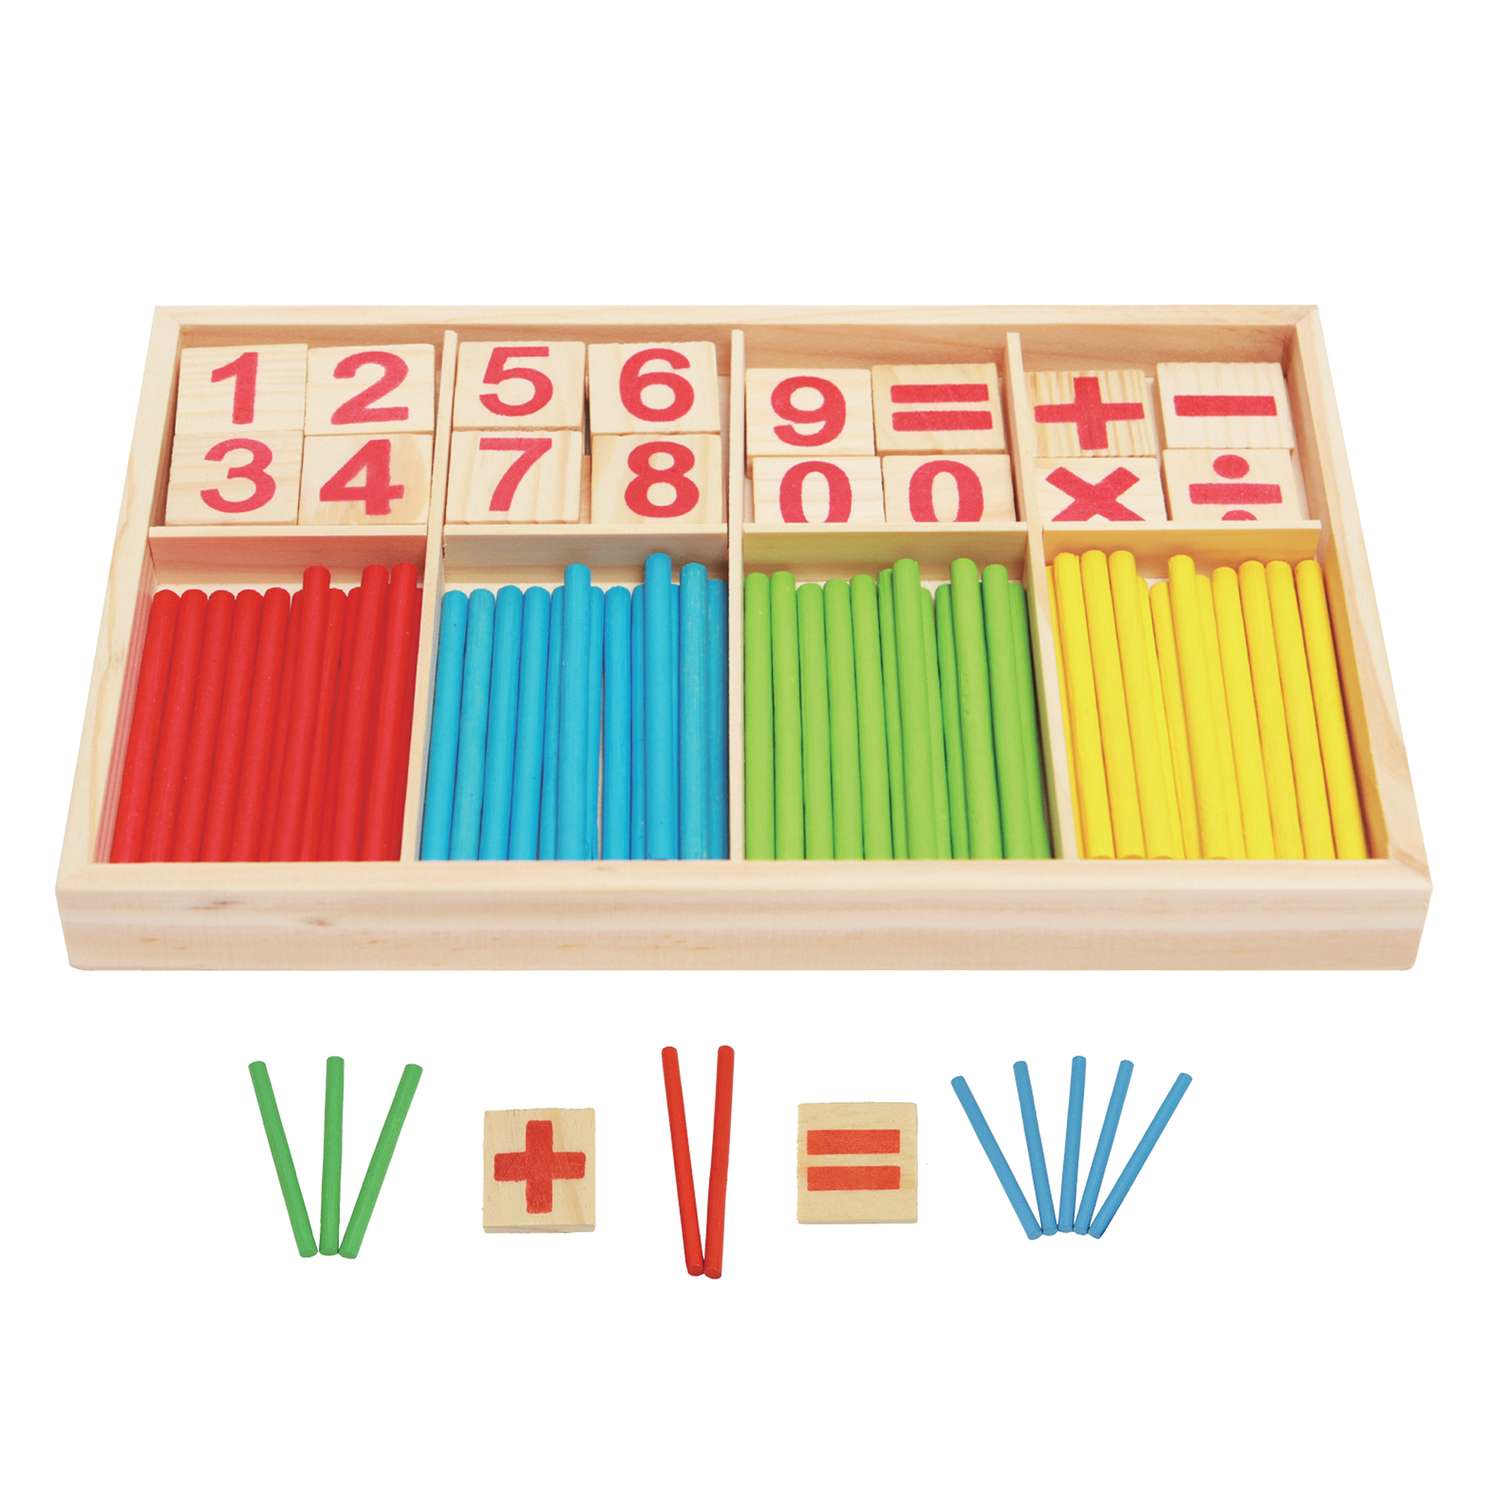 Игрушка развивающая Mapacha развивающая игрушка подготовка к школе счетный материал. Счетные палочки - фото 1